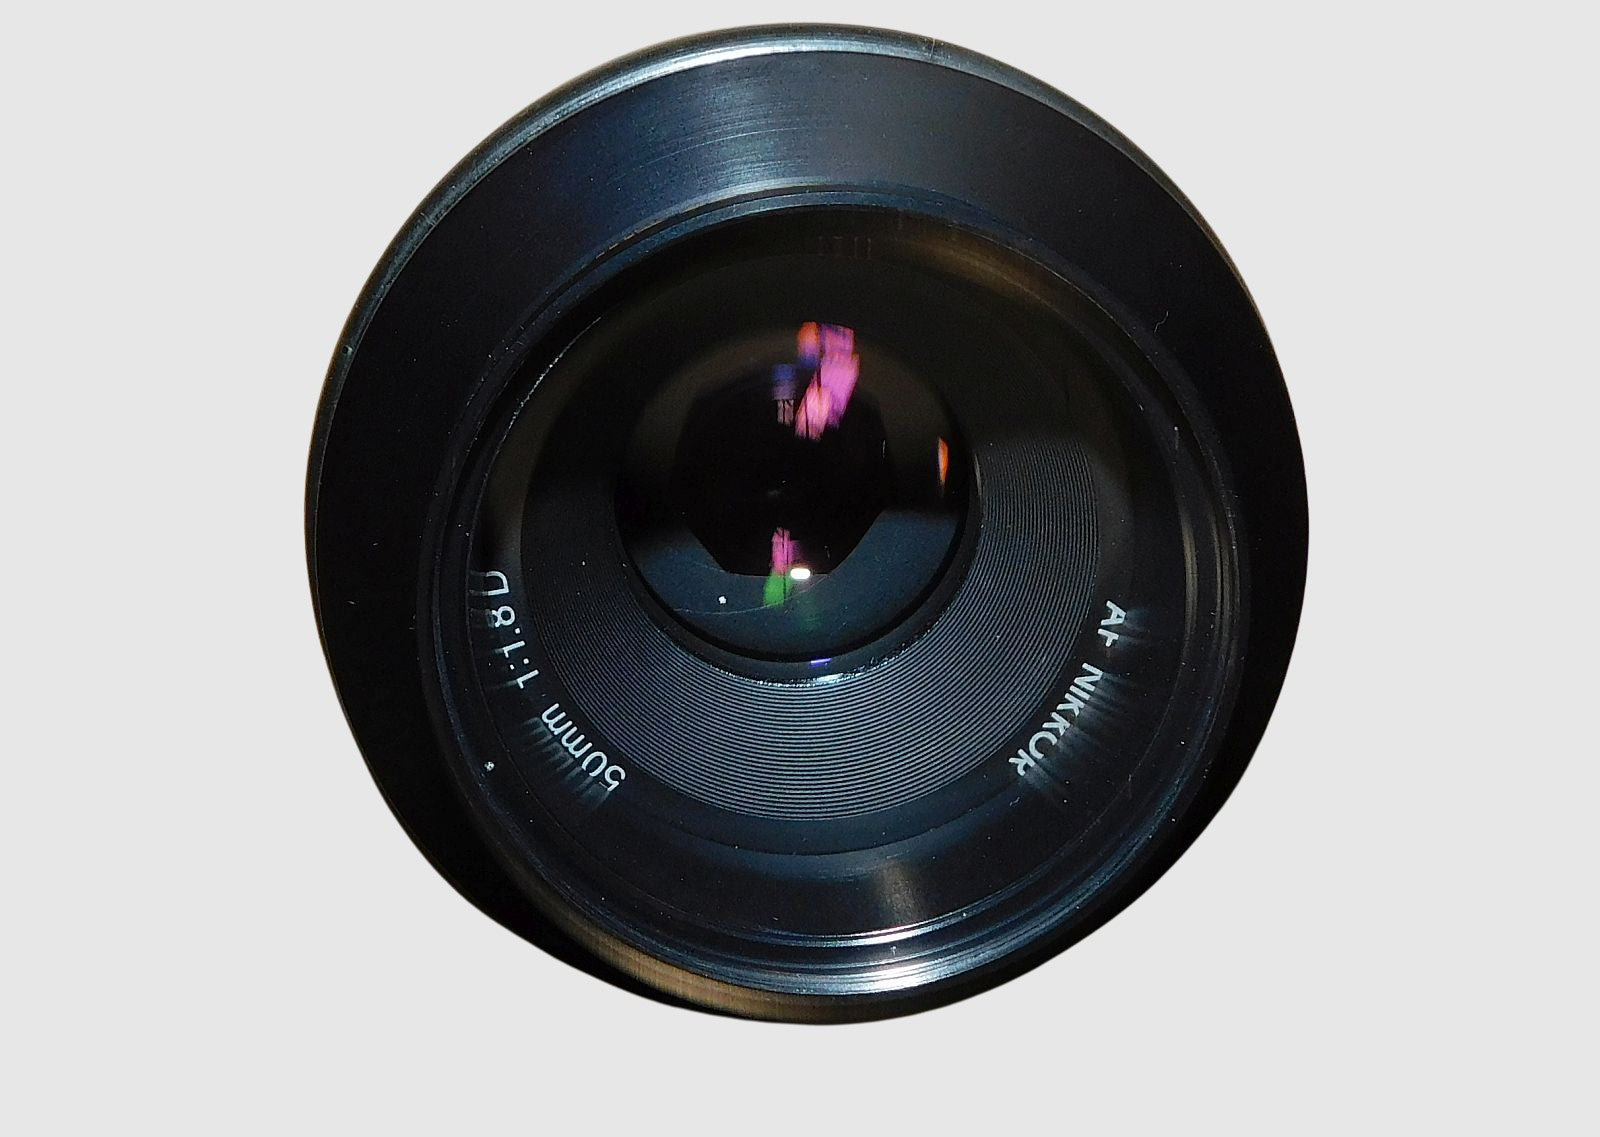 Melles Griot 59 LGB 450 Invaritar 50mm 1:1.18 D AF Nikkor Nikon Lens F Mount